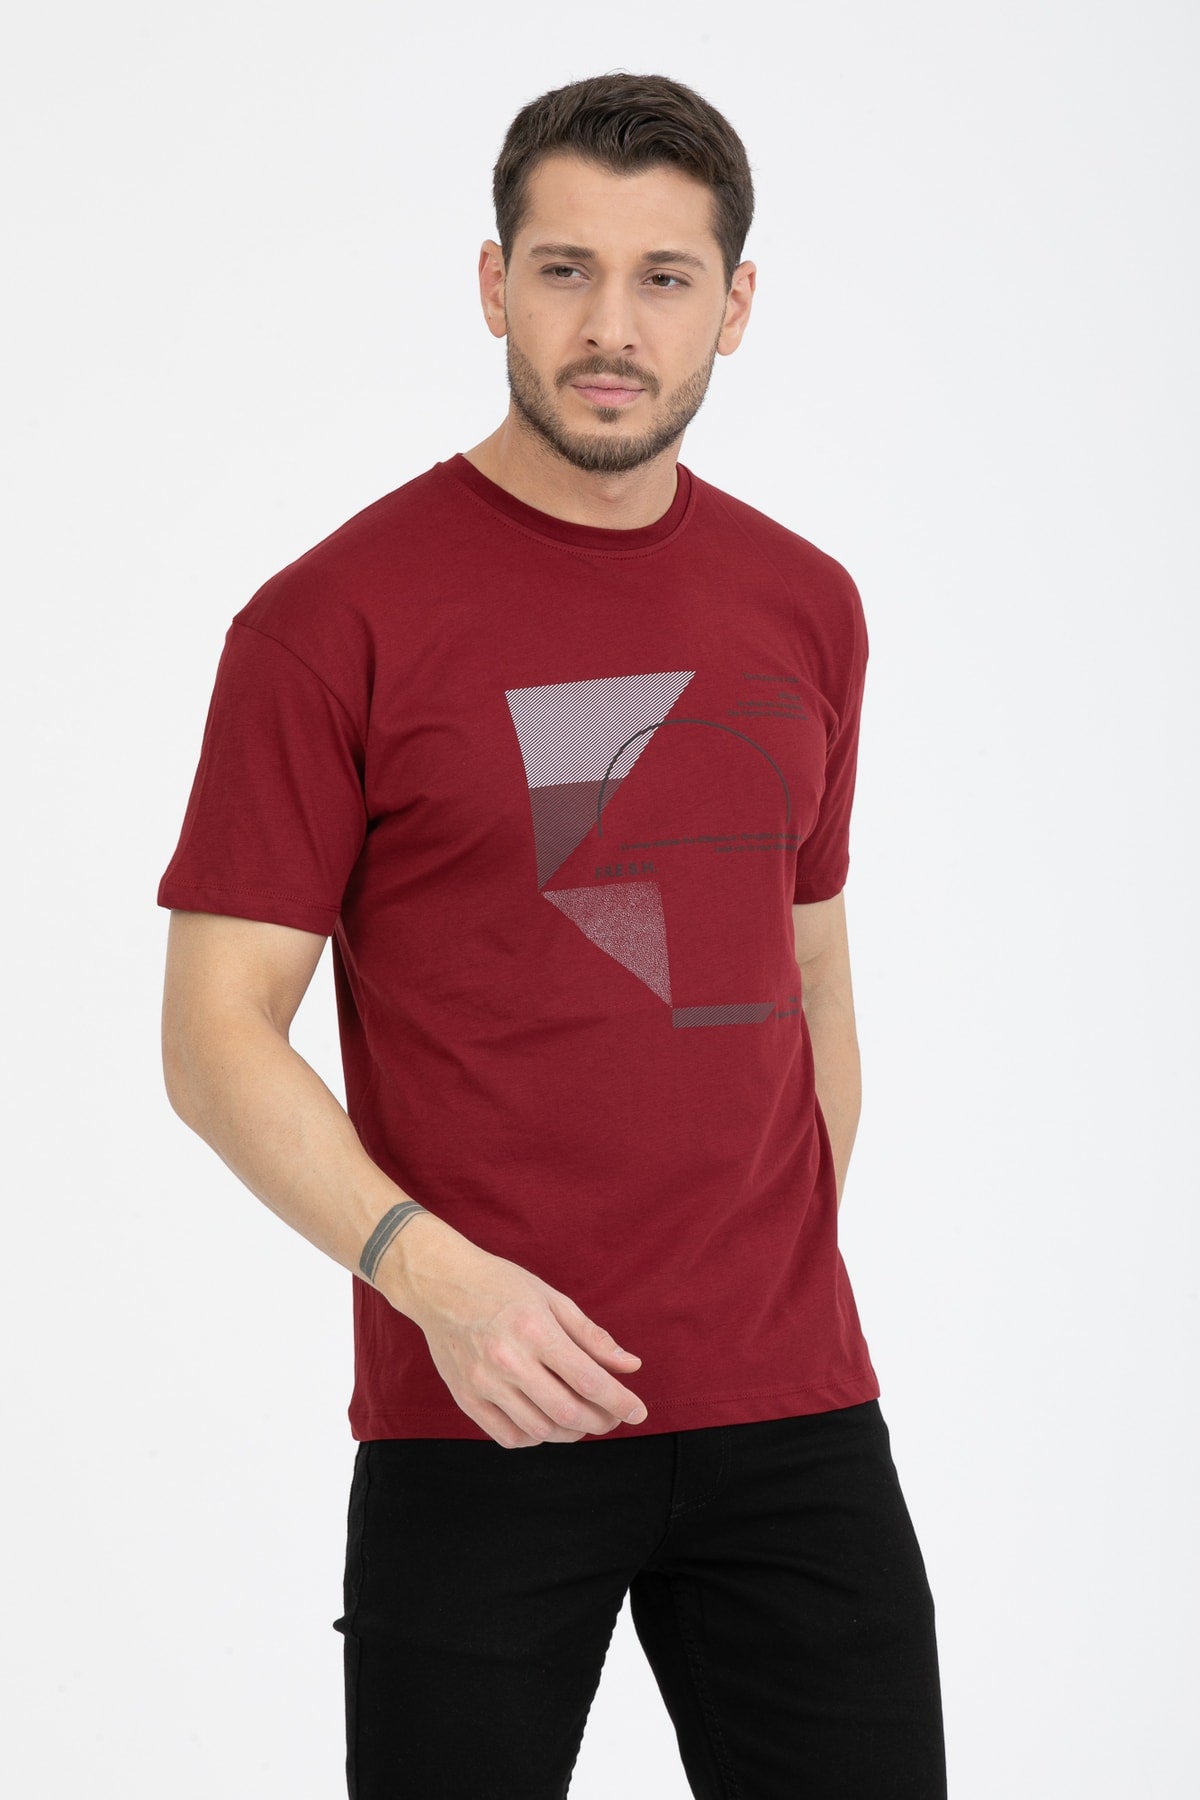 Men's Printed T-Shirt Regular Fit Claret Red